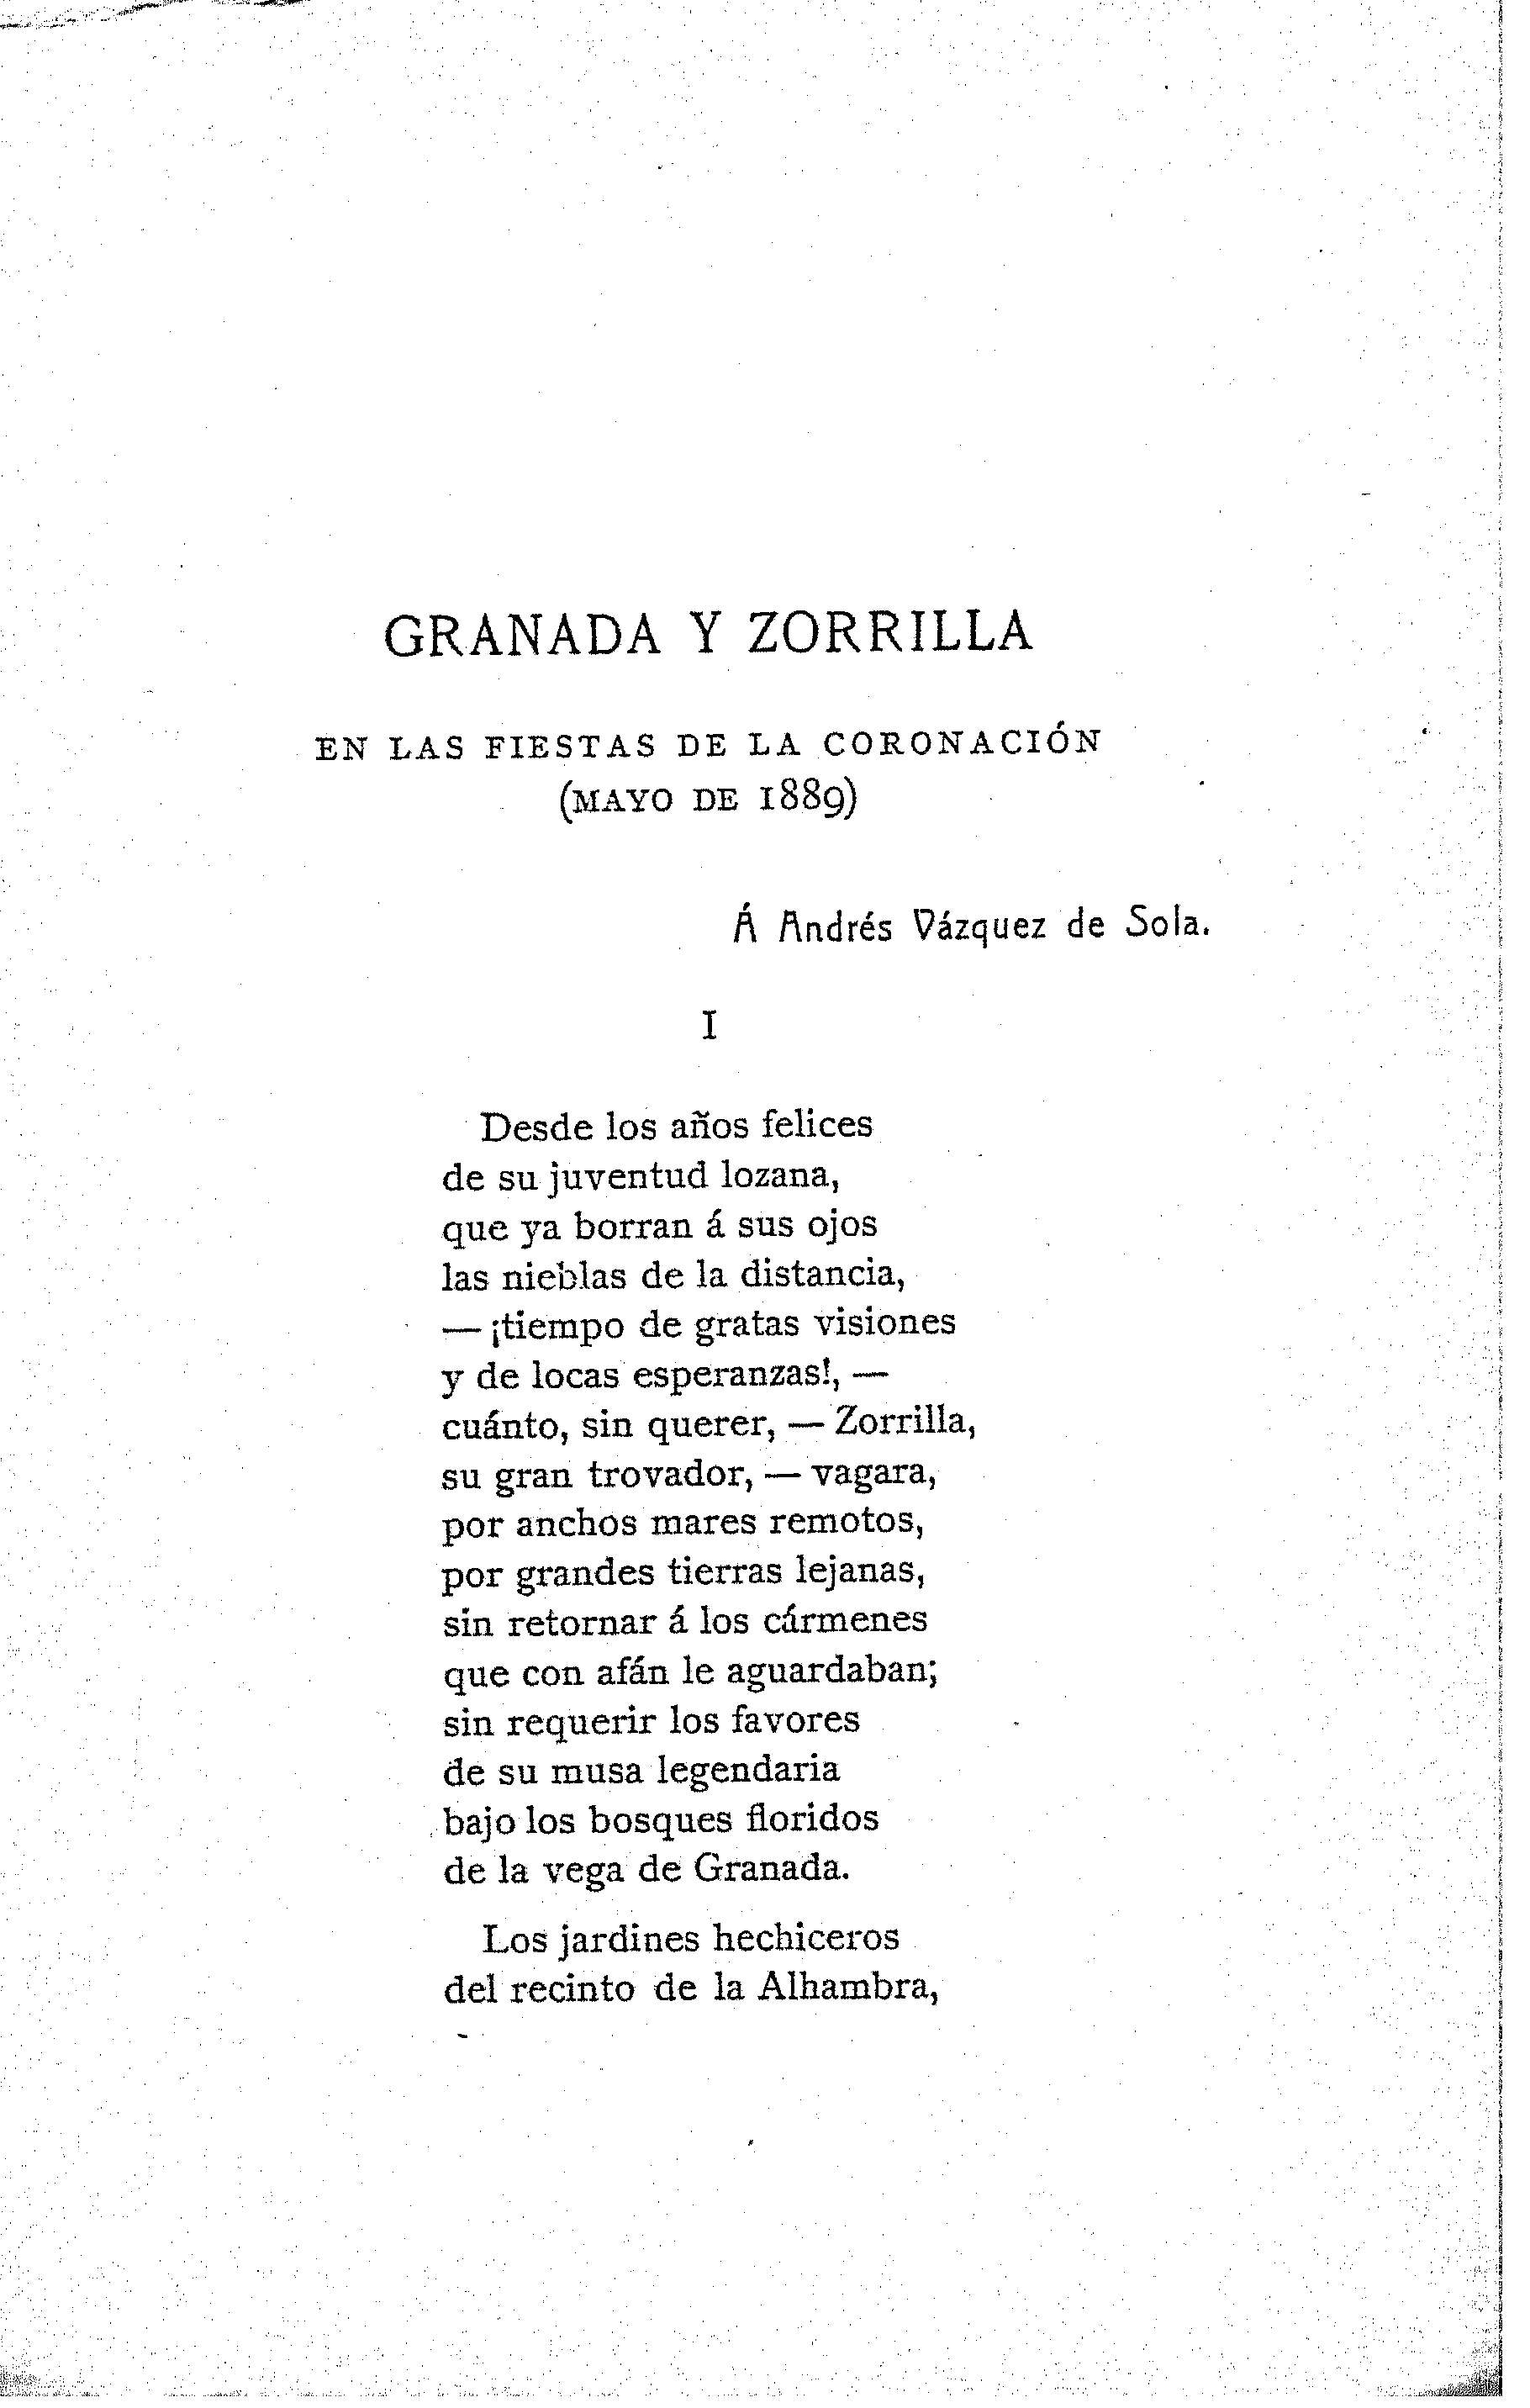 Granada y Zorrilla. En las fiestas de la coronación (mayo de 1889)